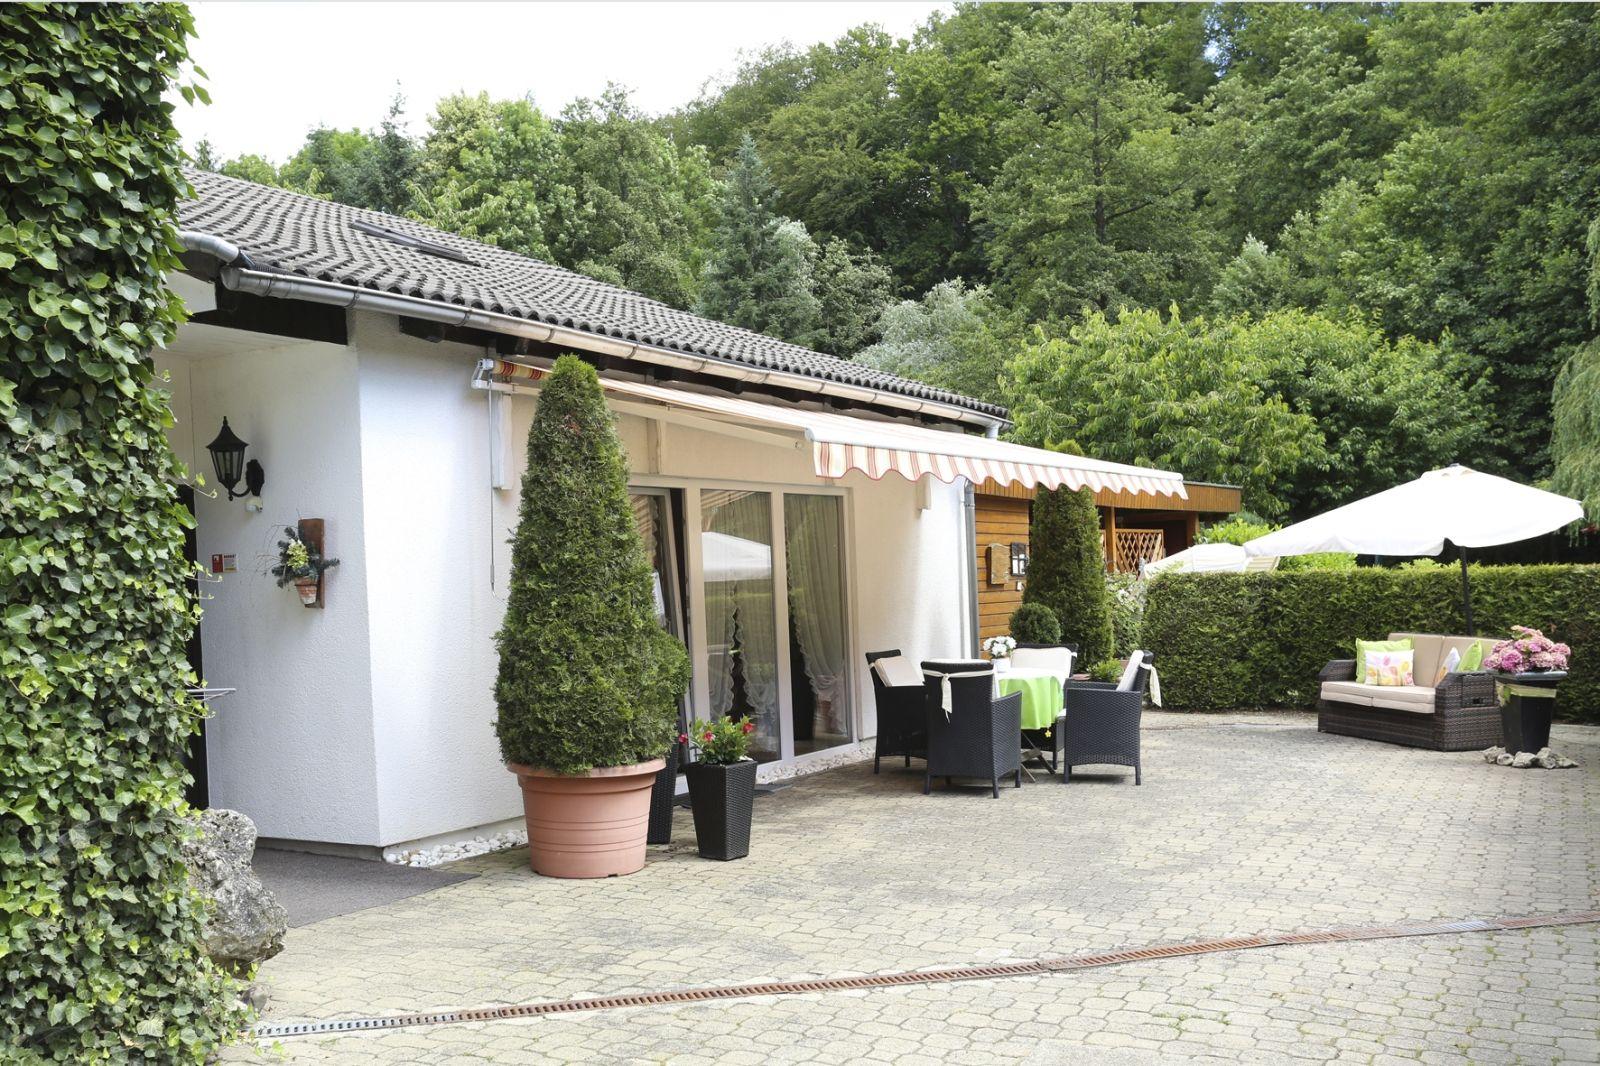 Ferienhaus in Walkenried mit Schöner Terrasse Ferienhaus in Niedersachsen